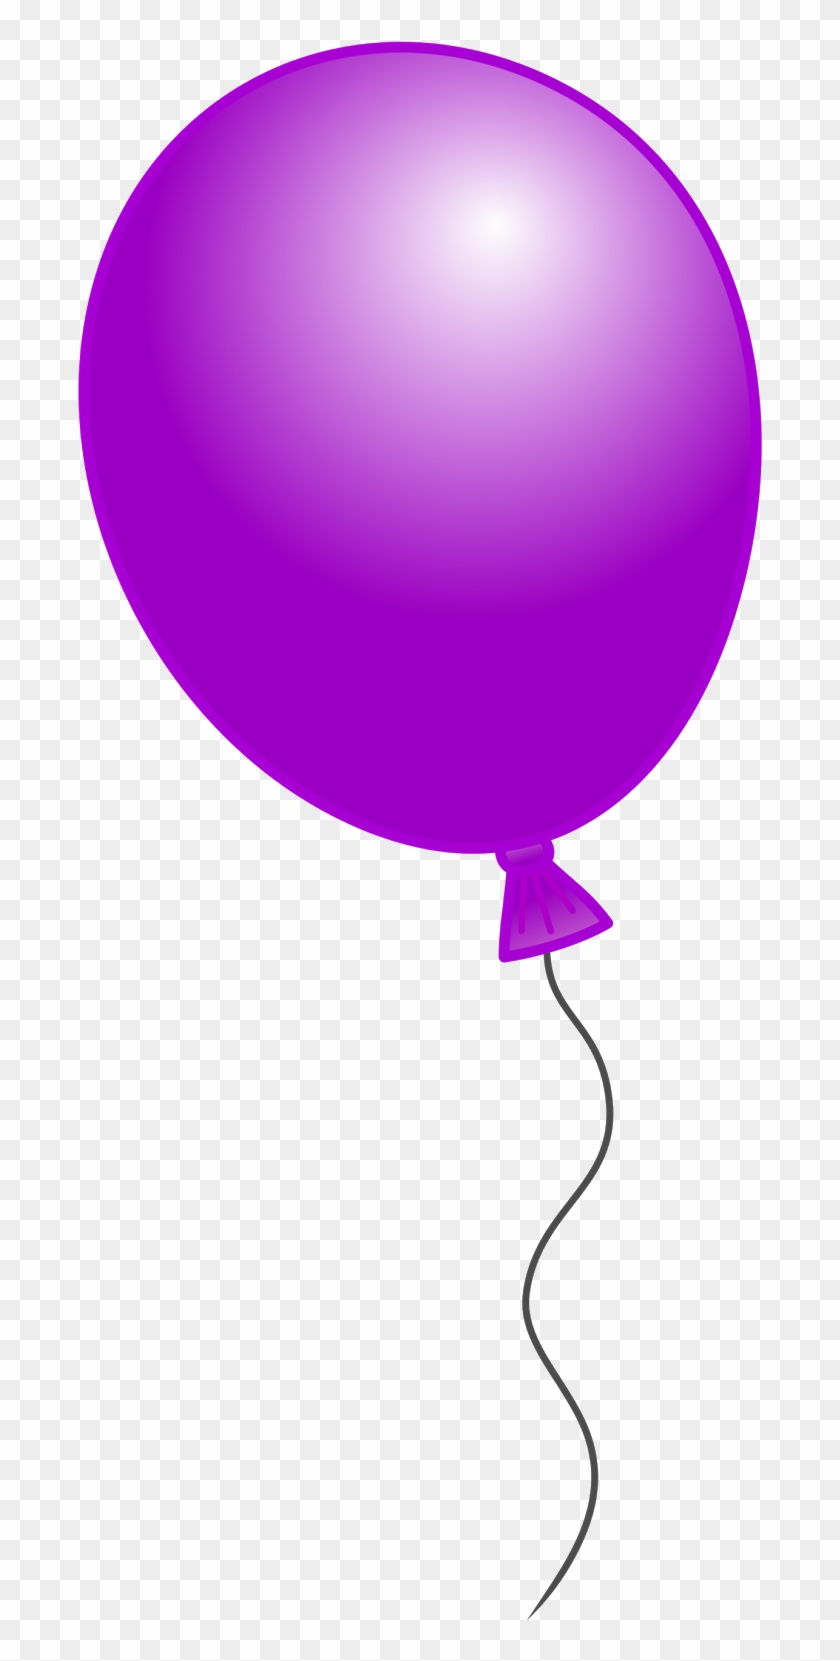 Single Balloon Clipart - Single Balloon Clipart Png #227369